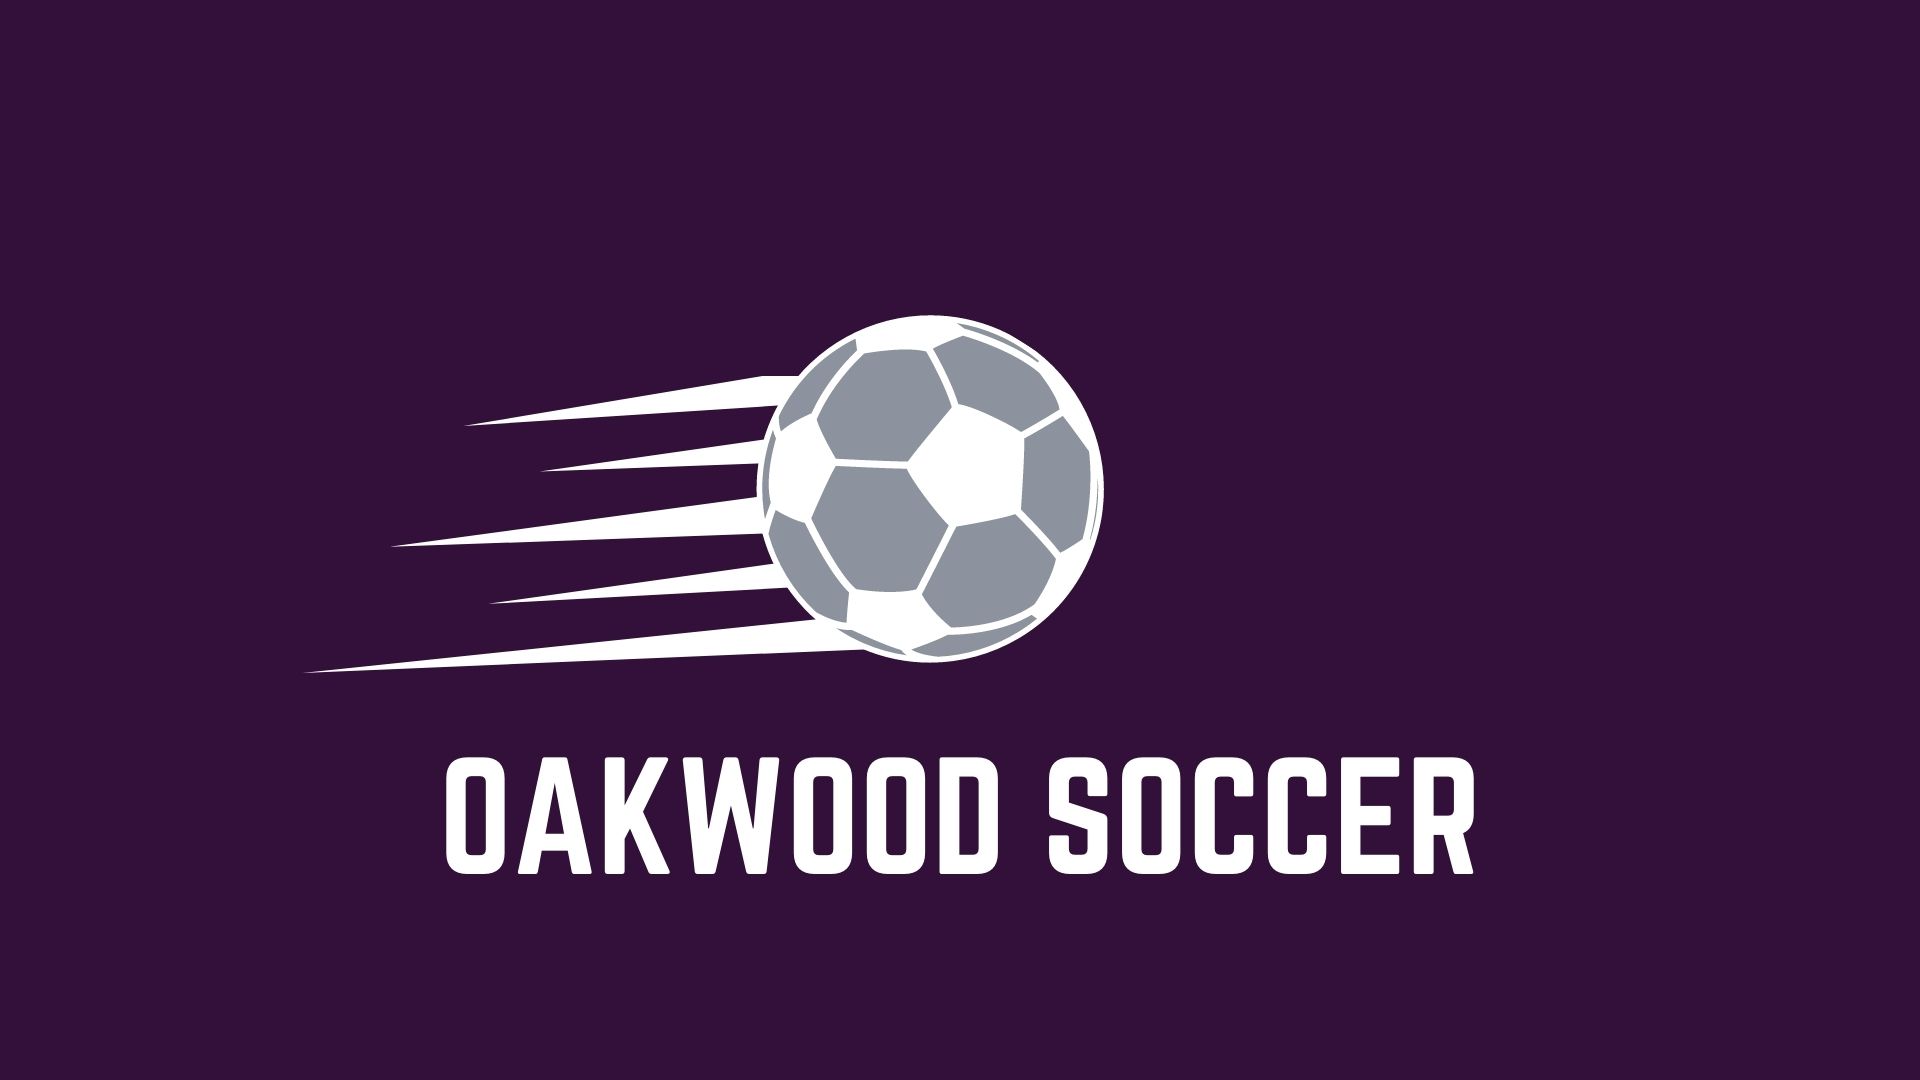 Oakwood soccer holds Monticello scoreless